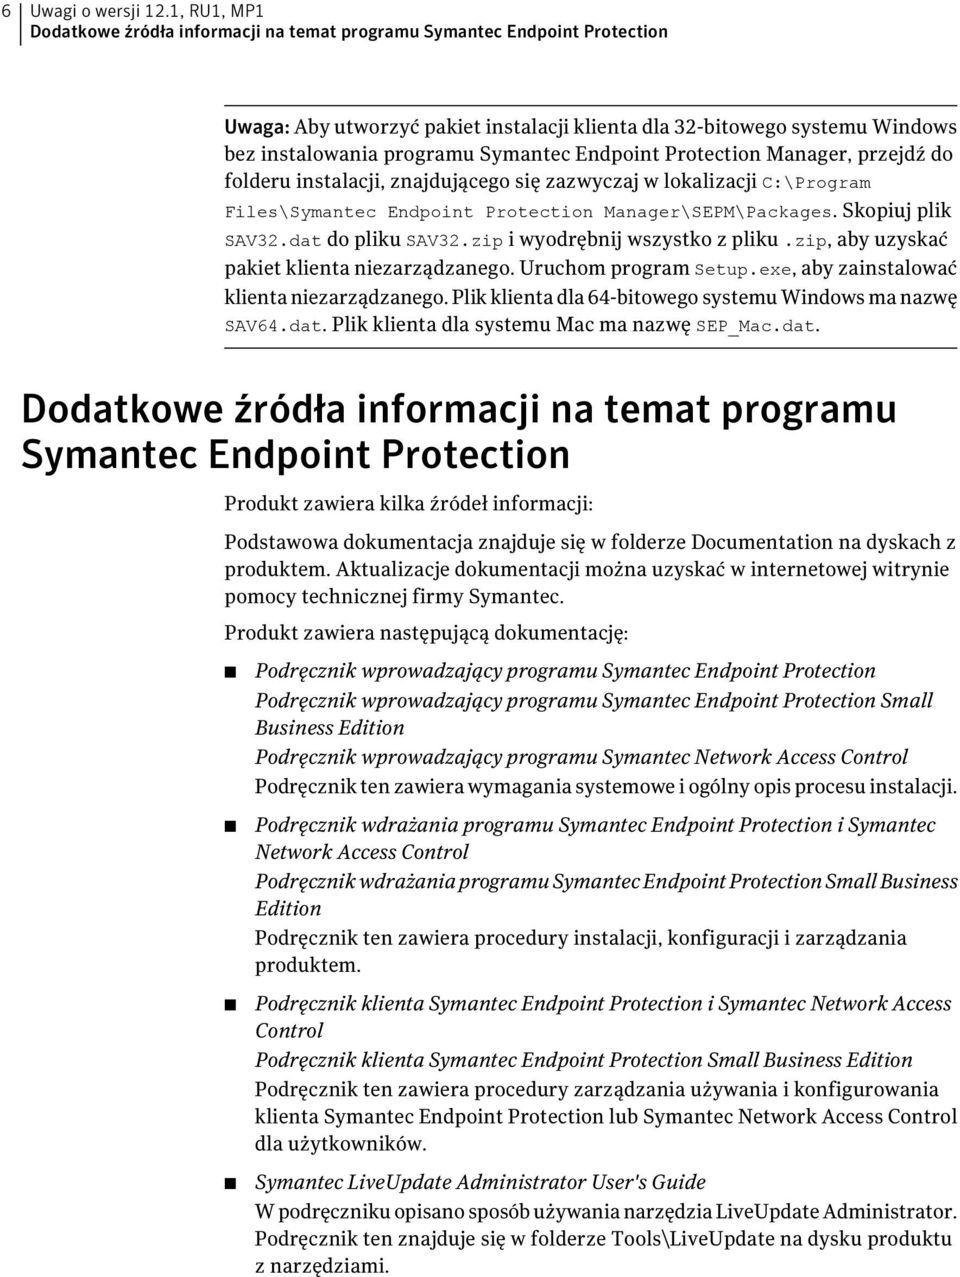 Endpoint Protection Manager, przejdź do folderu instalacji, znajdującego się zazwyczaj w lokalizacji C:\Program Files\Symantec Endpoint Protection Manager\SEPM\Packages. Skopiuj plik SAV32.